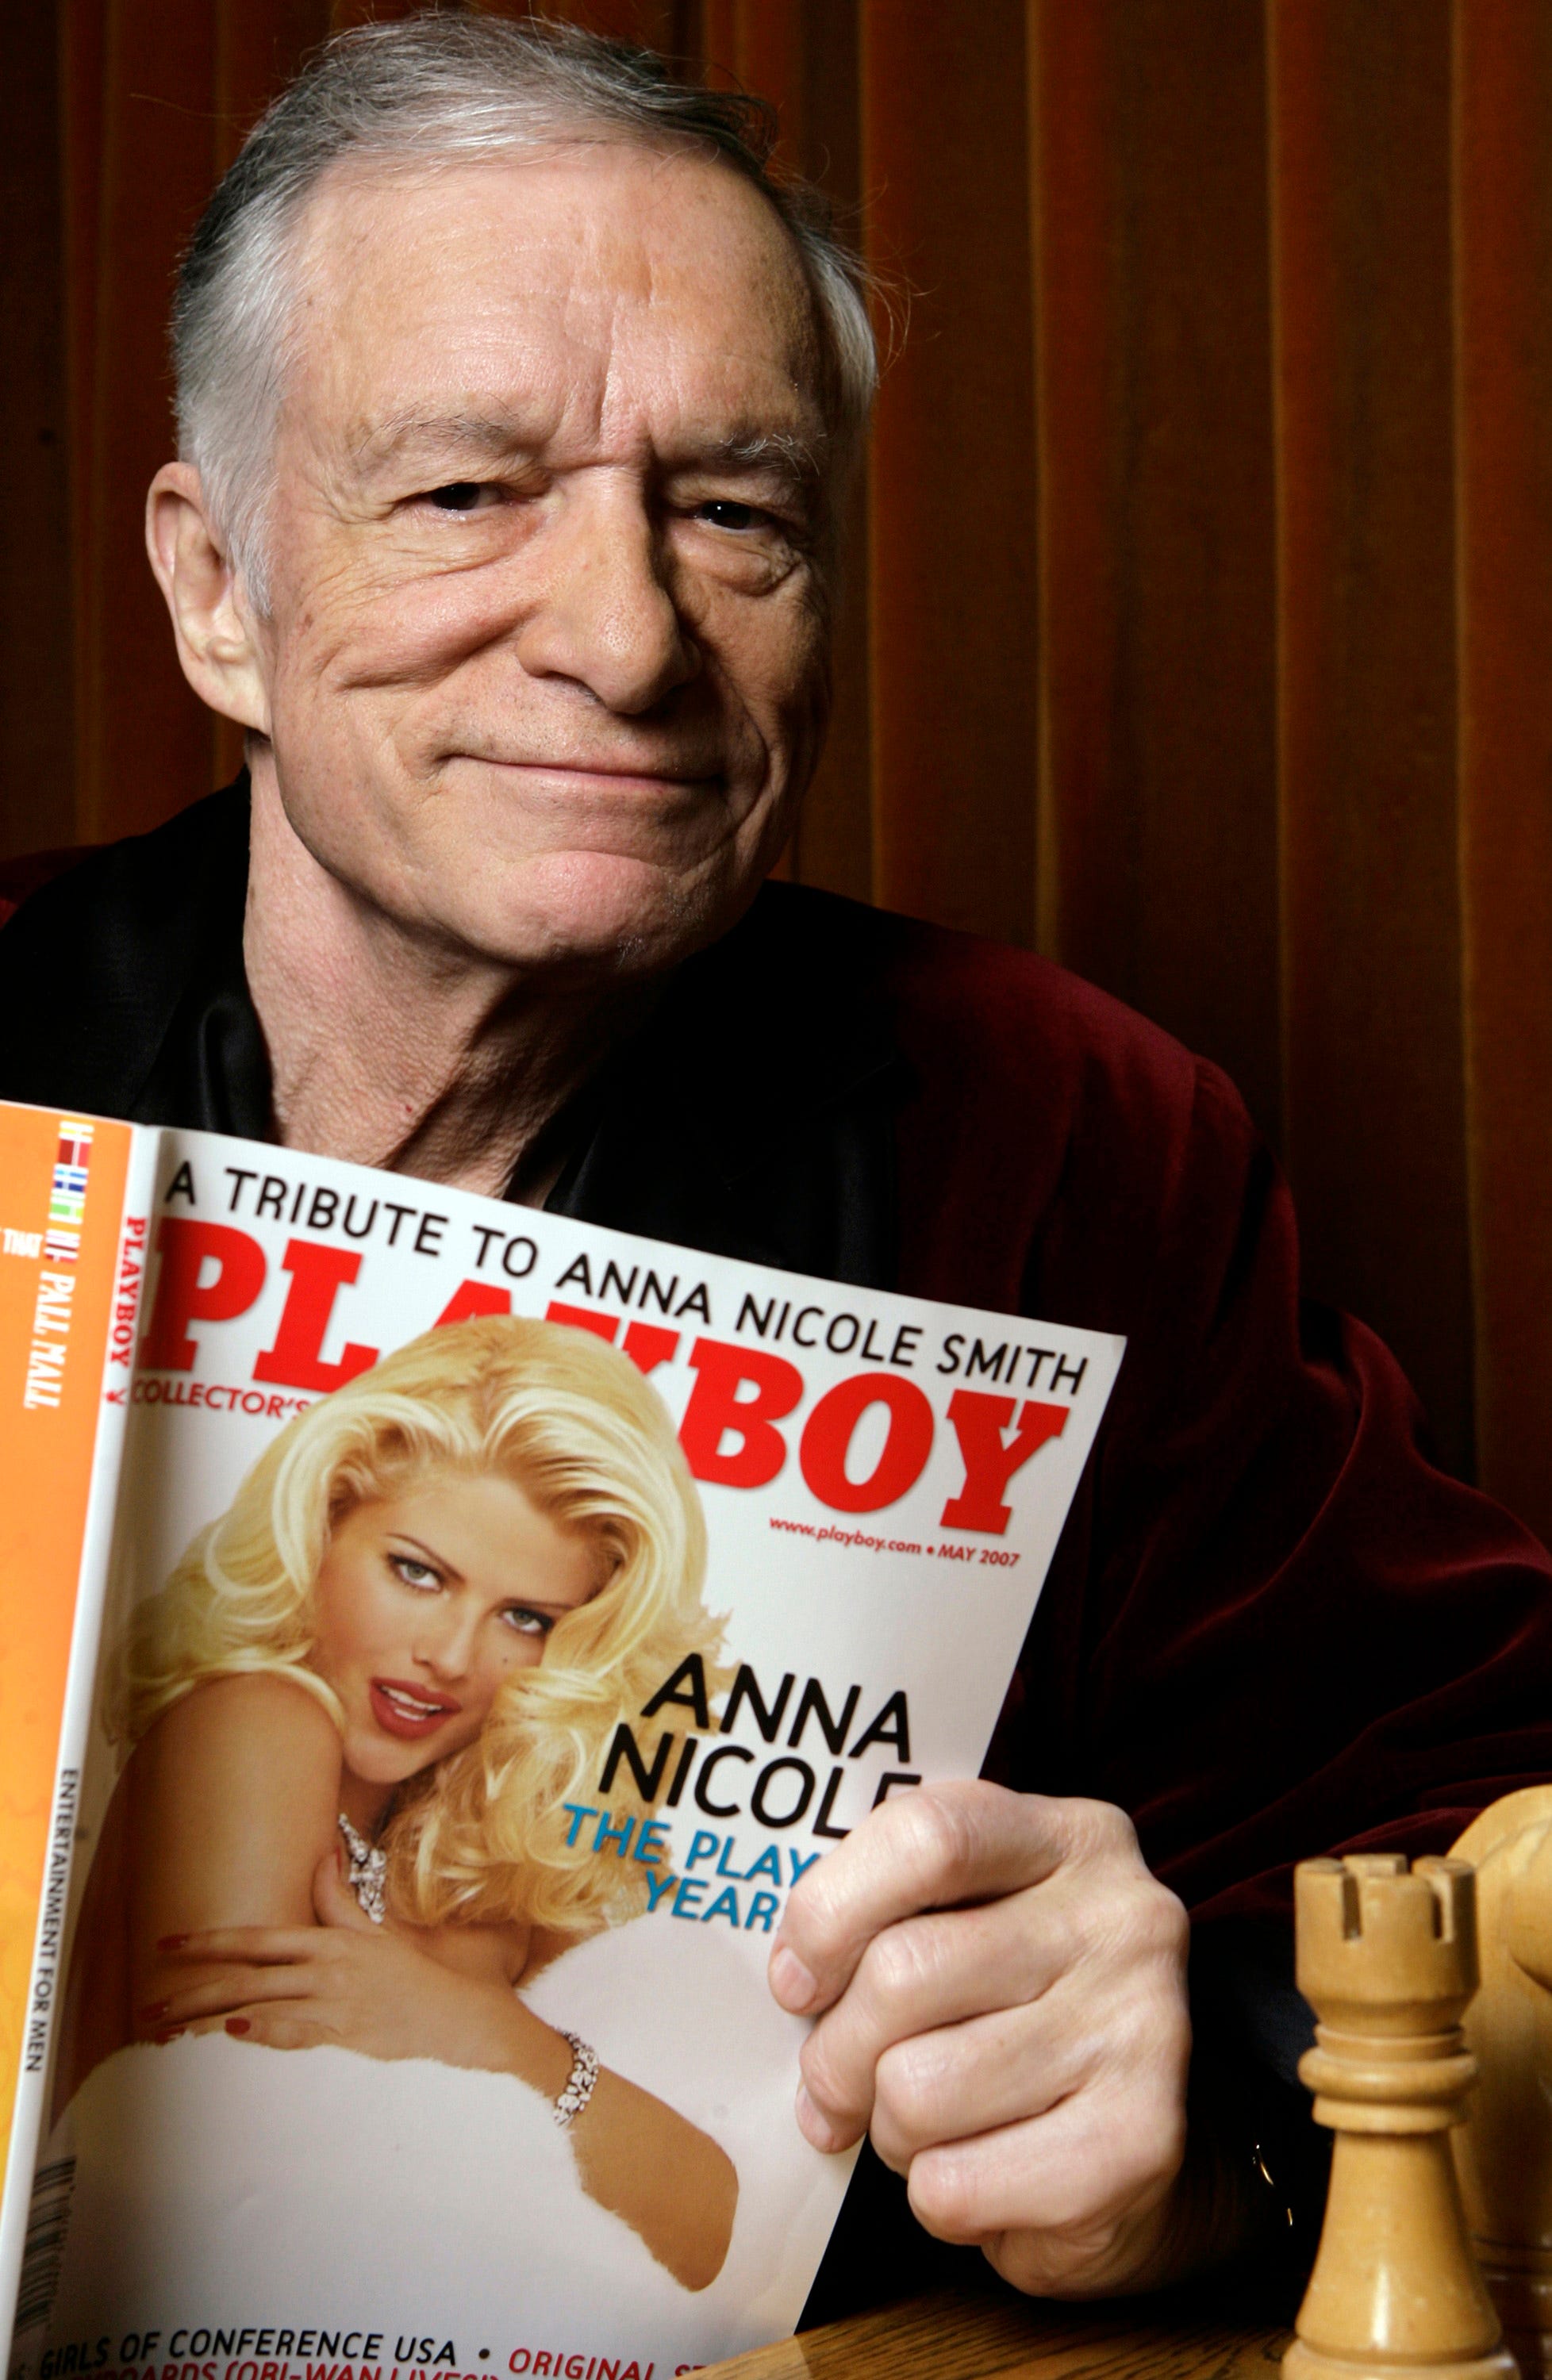 Playboy Live Sex - Secrets of Playboy': Hugh Hefner docuseries' biggest allegations